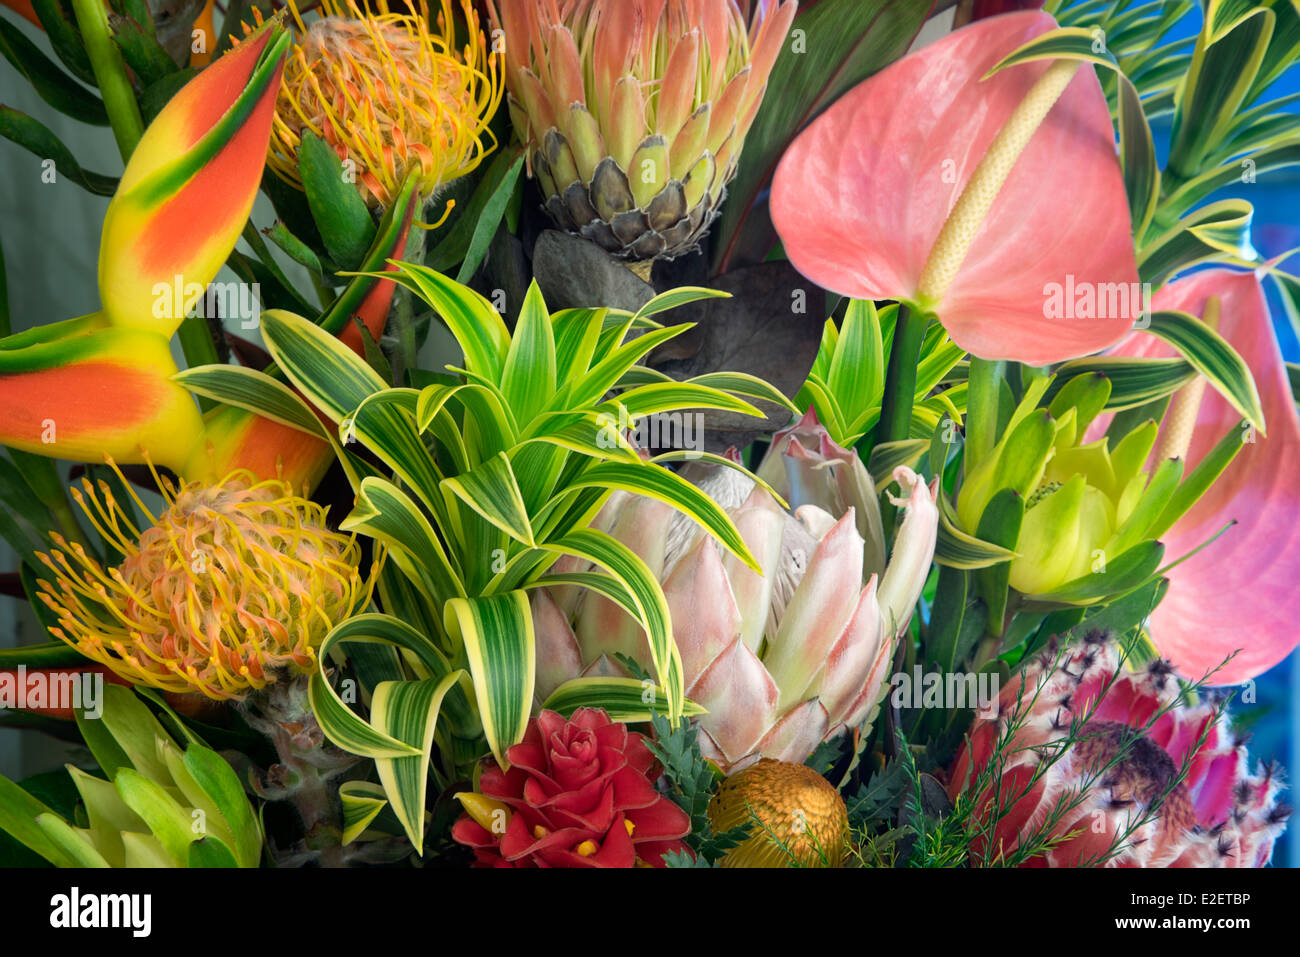 Affichage des fleurs tropicales. bouquet de fleurs tropicales Maui, Hawaii Banque D'Images